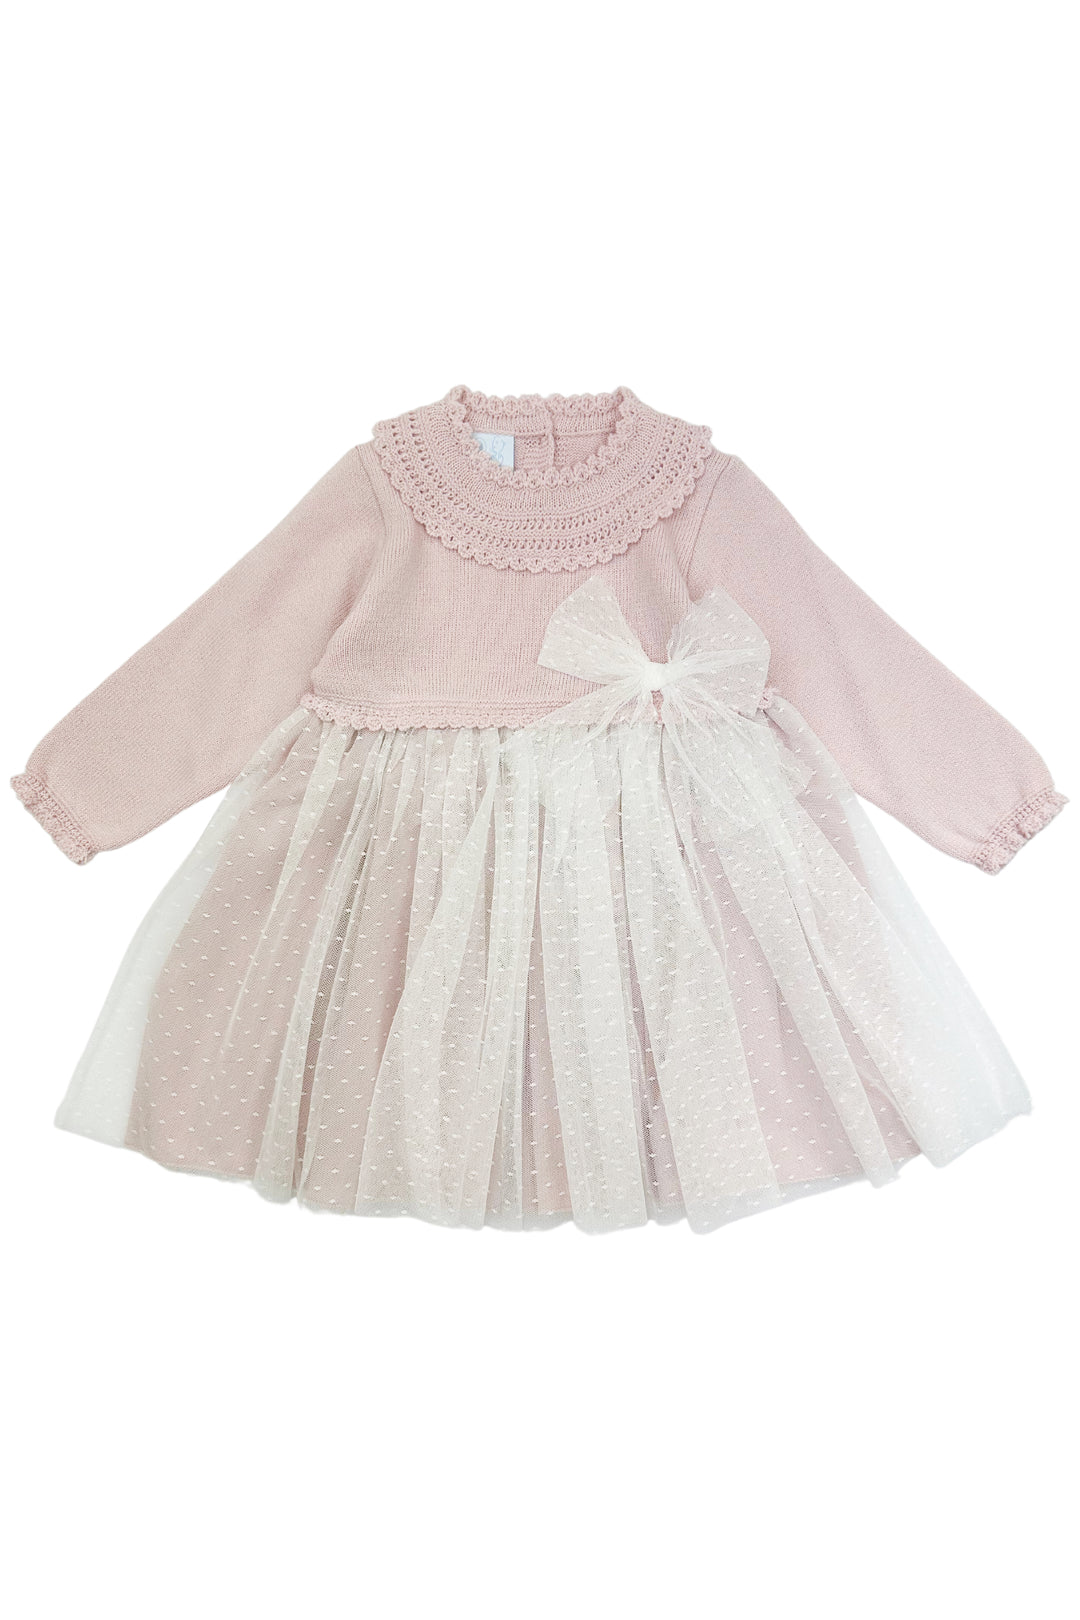 Granlei "Honey" Dusky Pink Shimmer Knit Tulle Dress | Millie and John